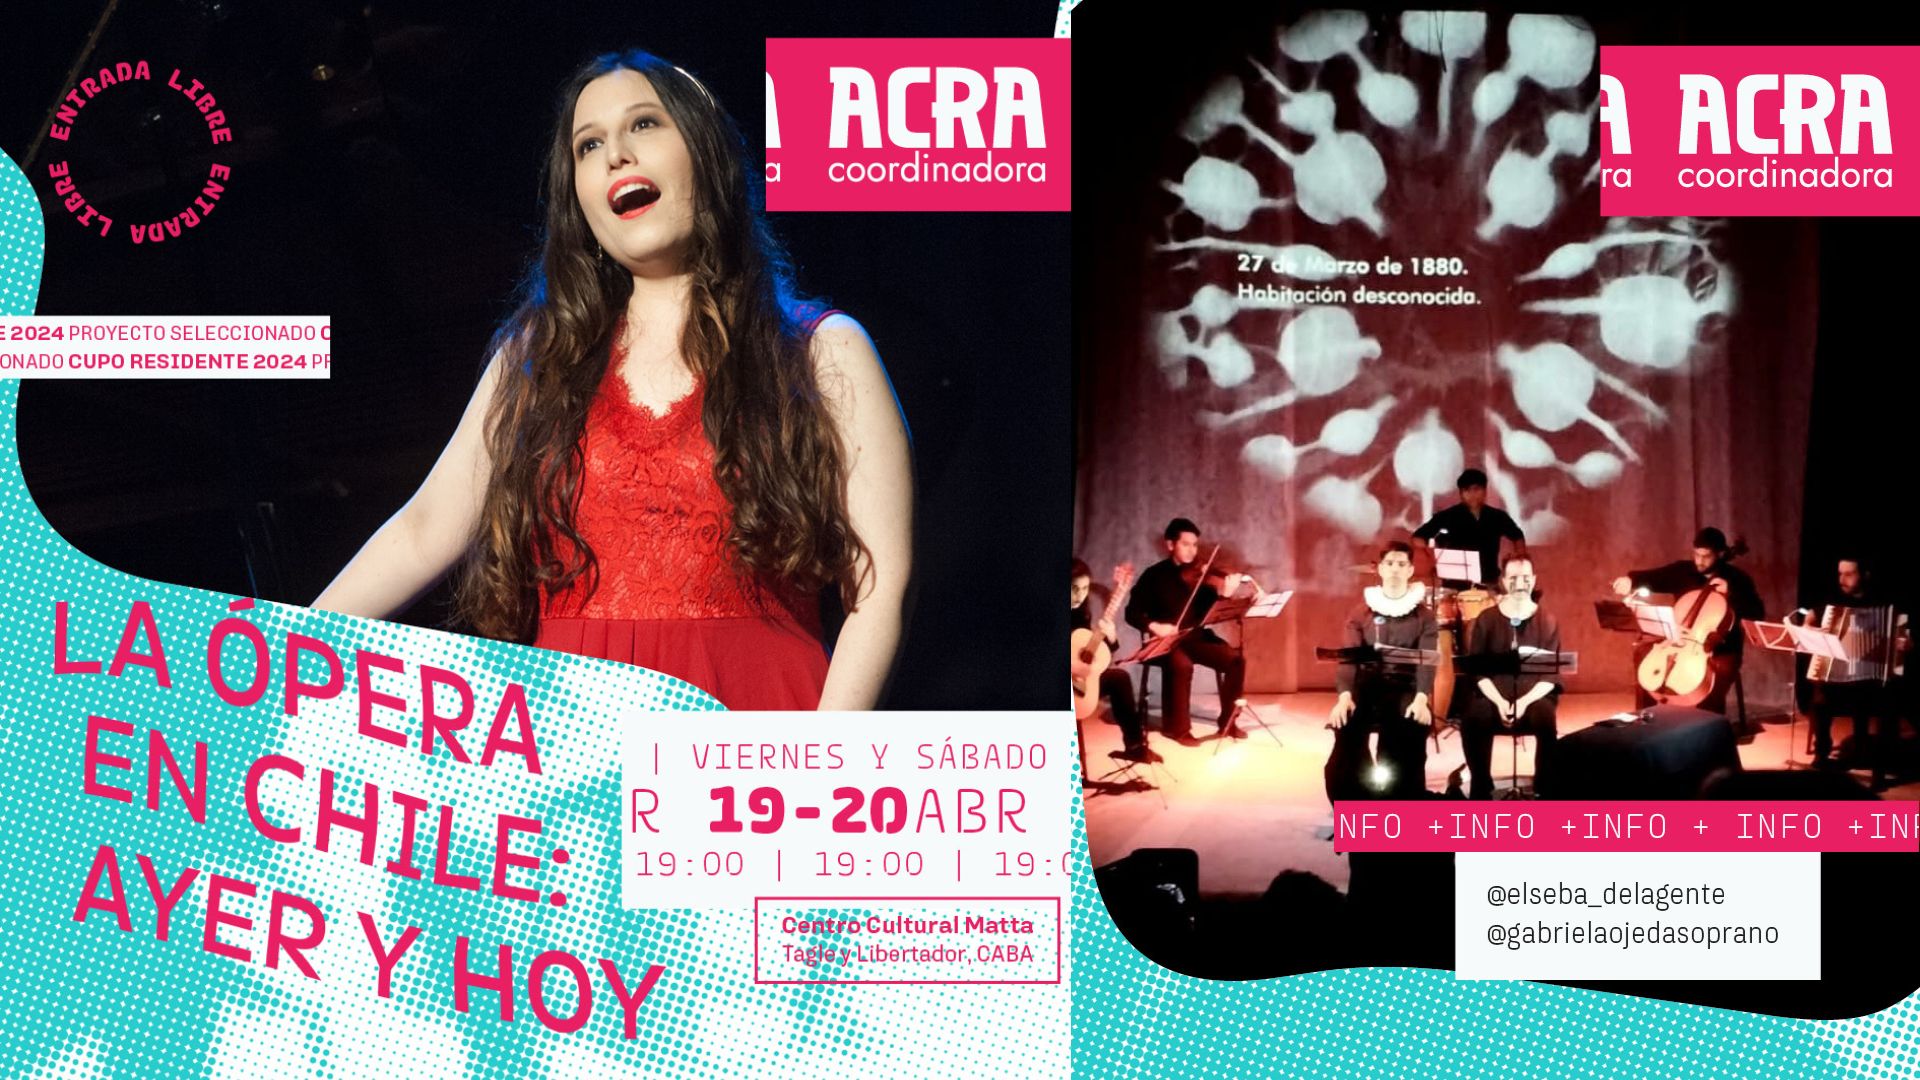 «La ópera en Chile: Ayer y Hoy» en la Embajada de Chile en Argentina